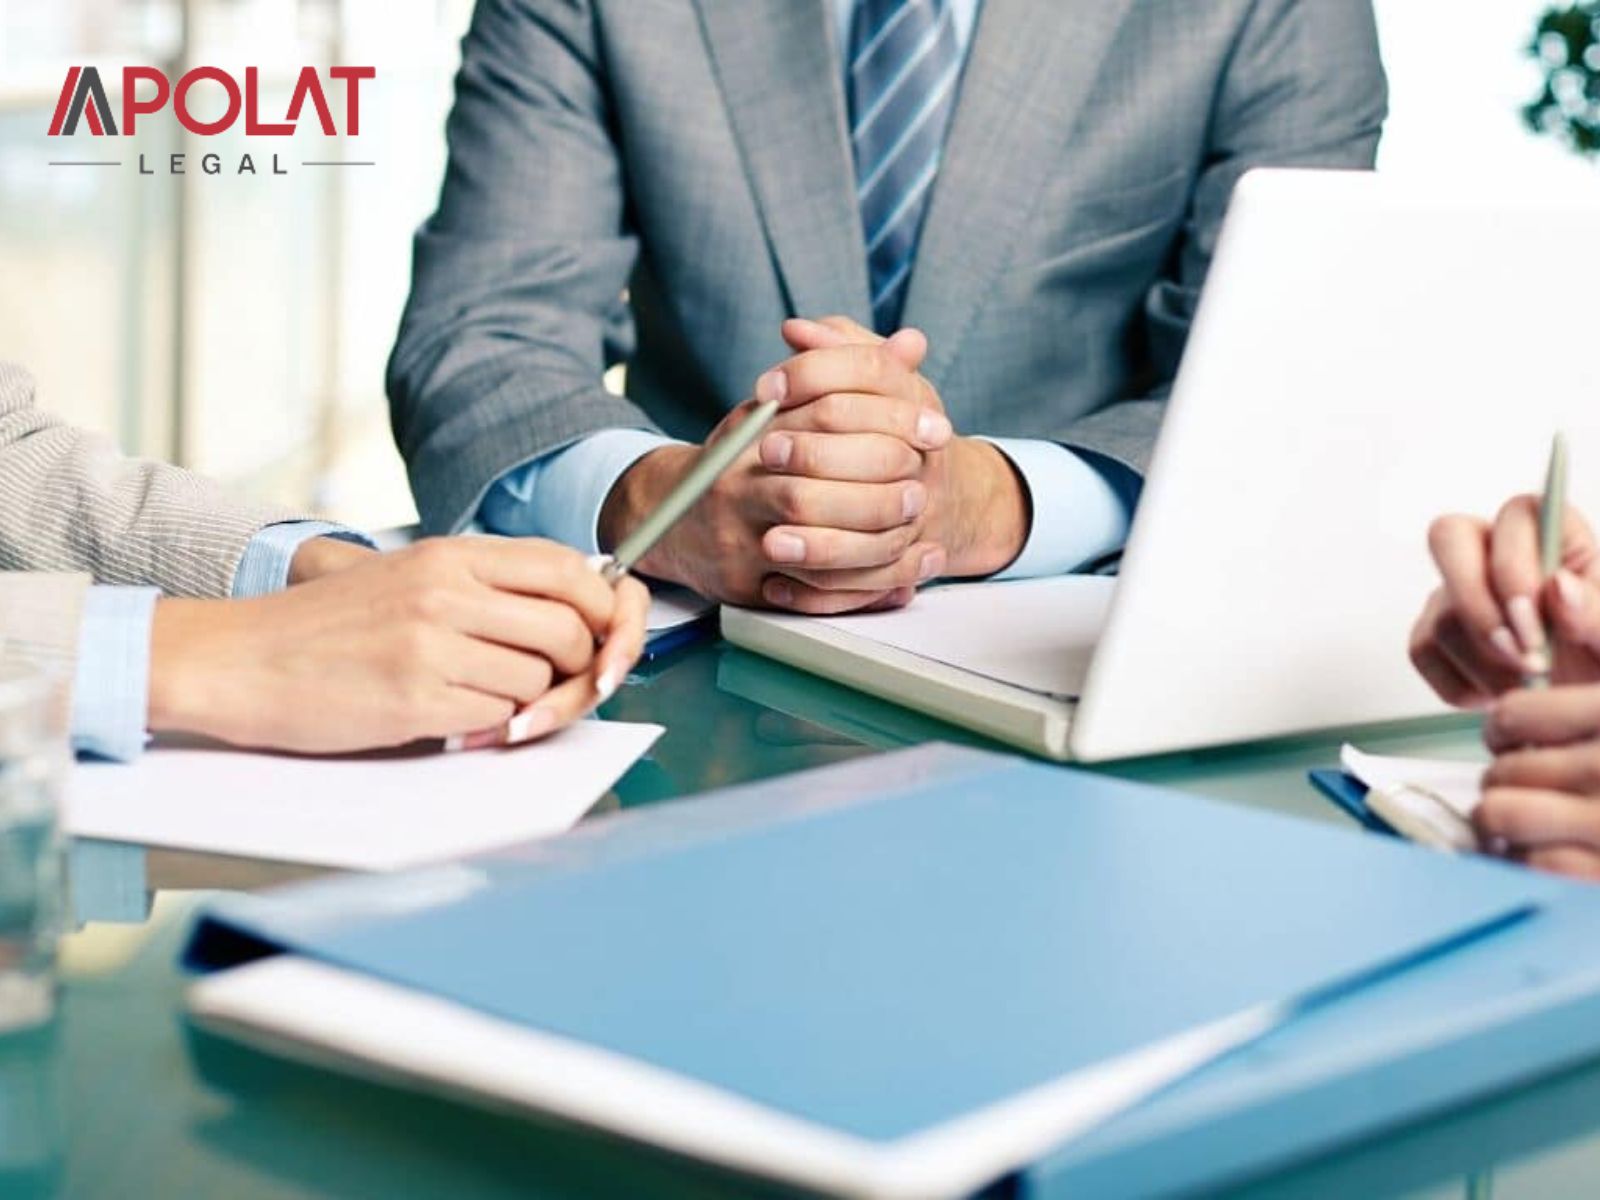 Apolat Legal - Đối tác đáng tin cậy trong việc cung cấp dịch vụ đăng ký thành lập doanh nghiệp